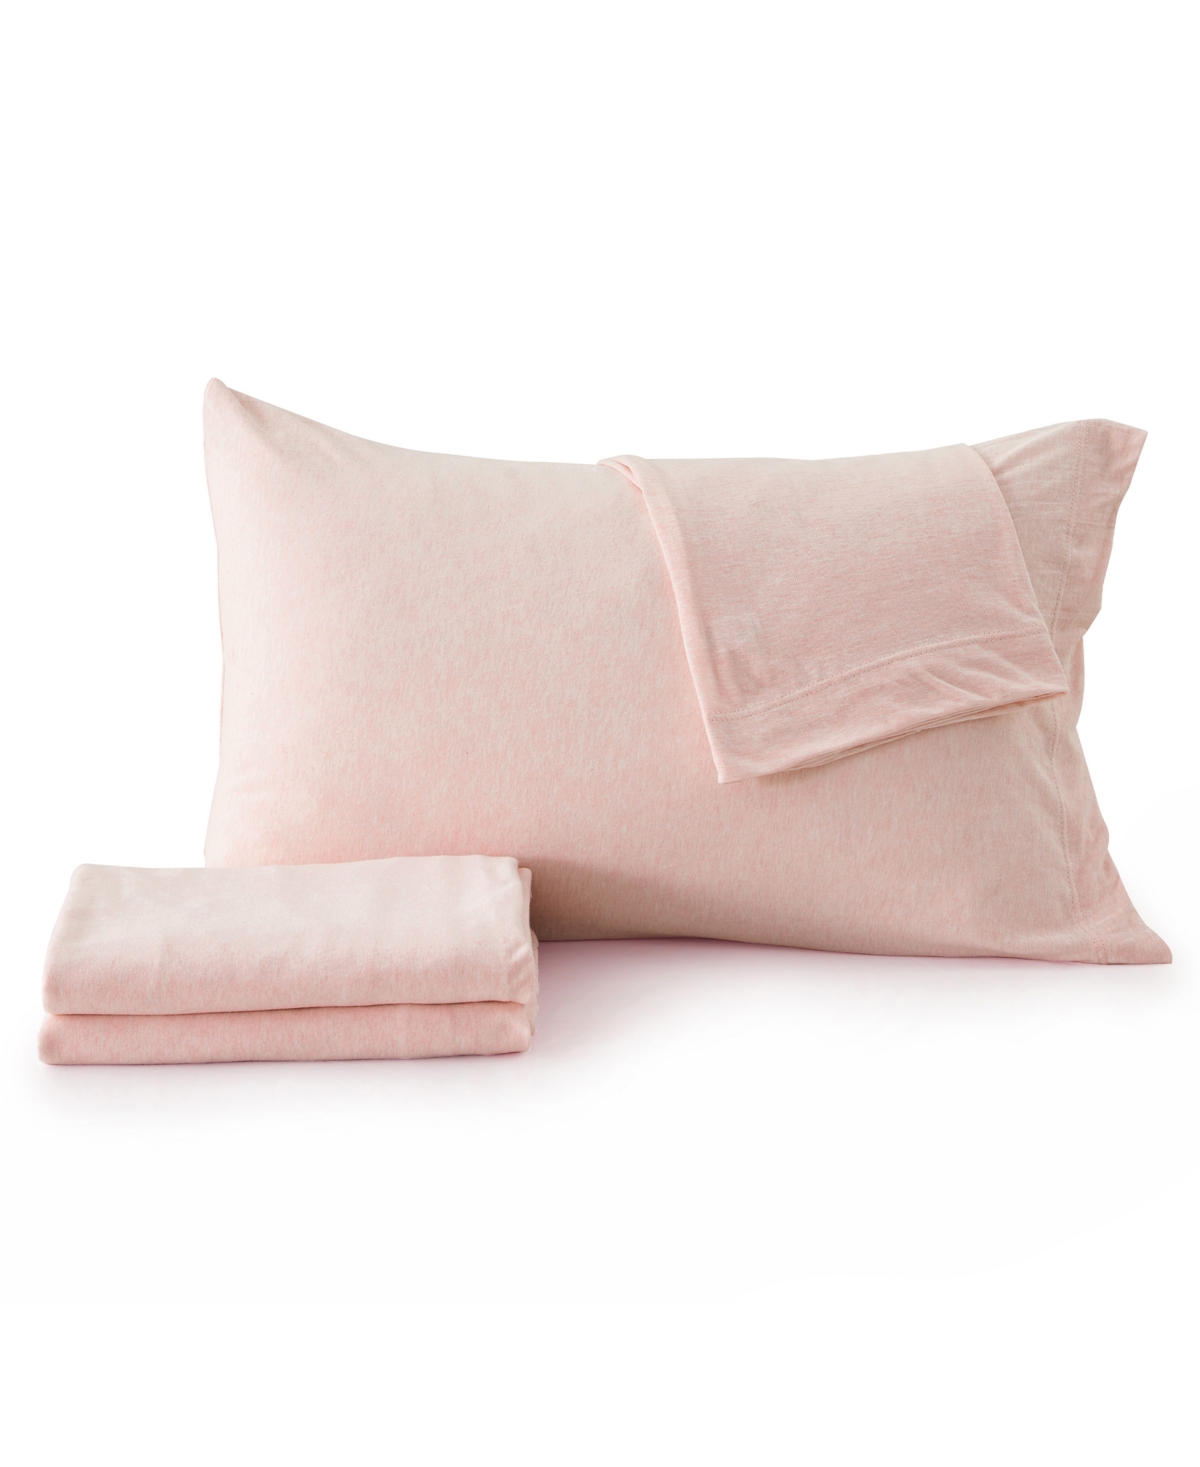 Shop Premium Comforts Heathered Melange T-shirt Jersey Knit Cotton Blend 4 Piece Sheet Set, King In Blush Pink